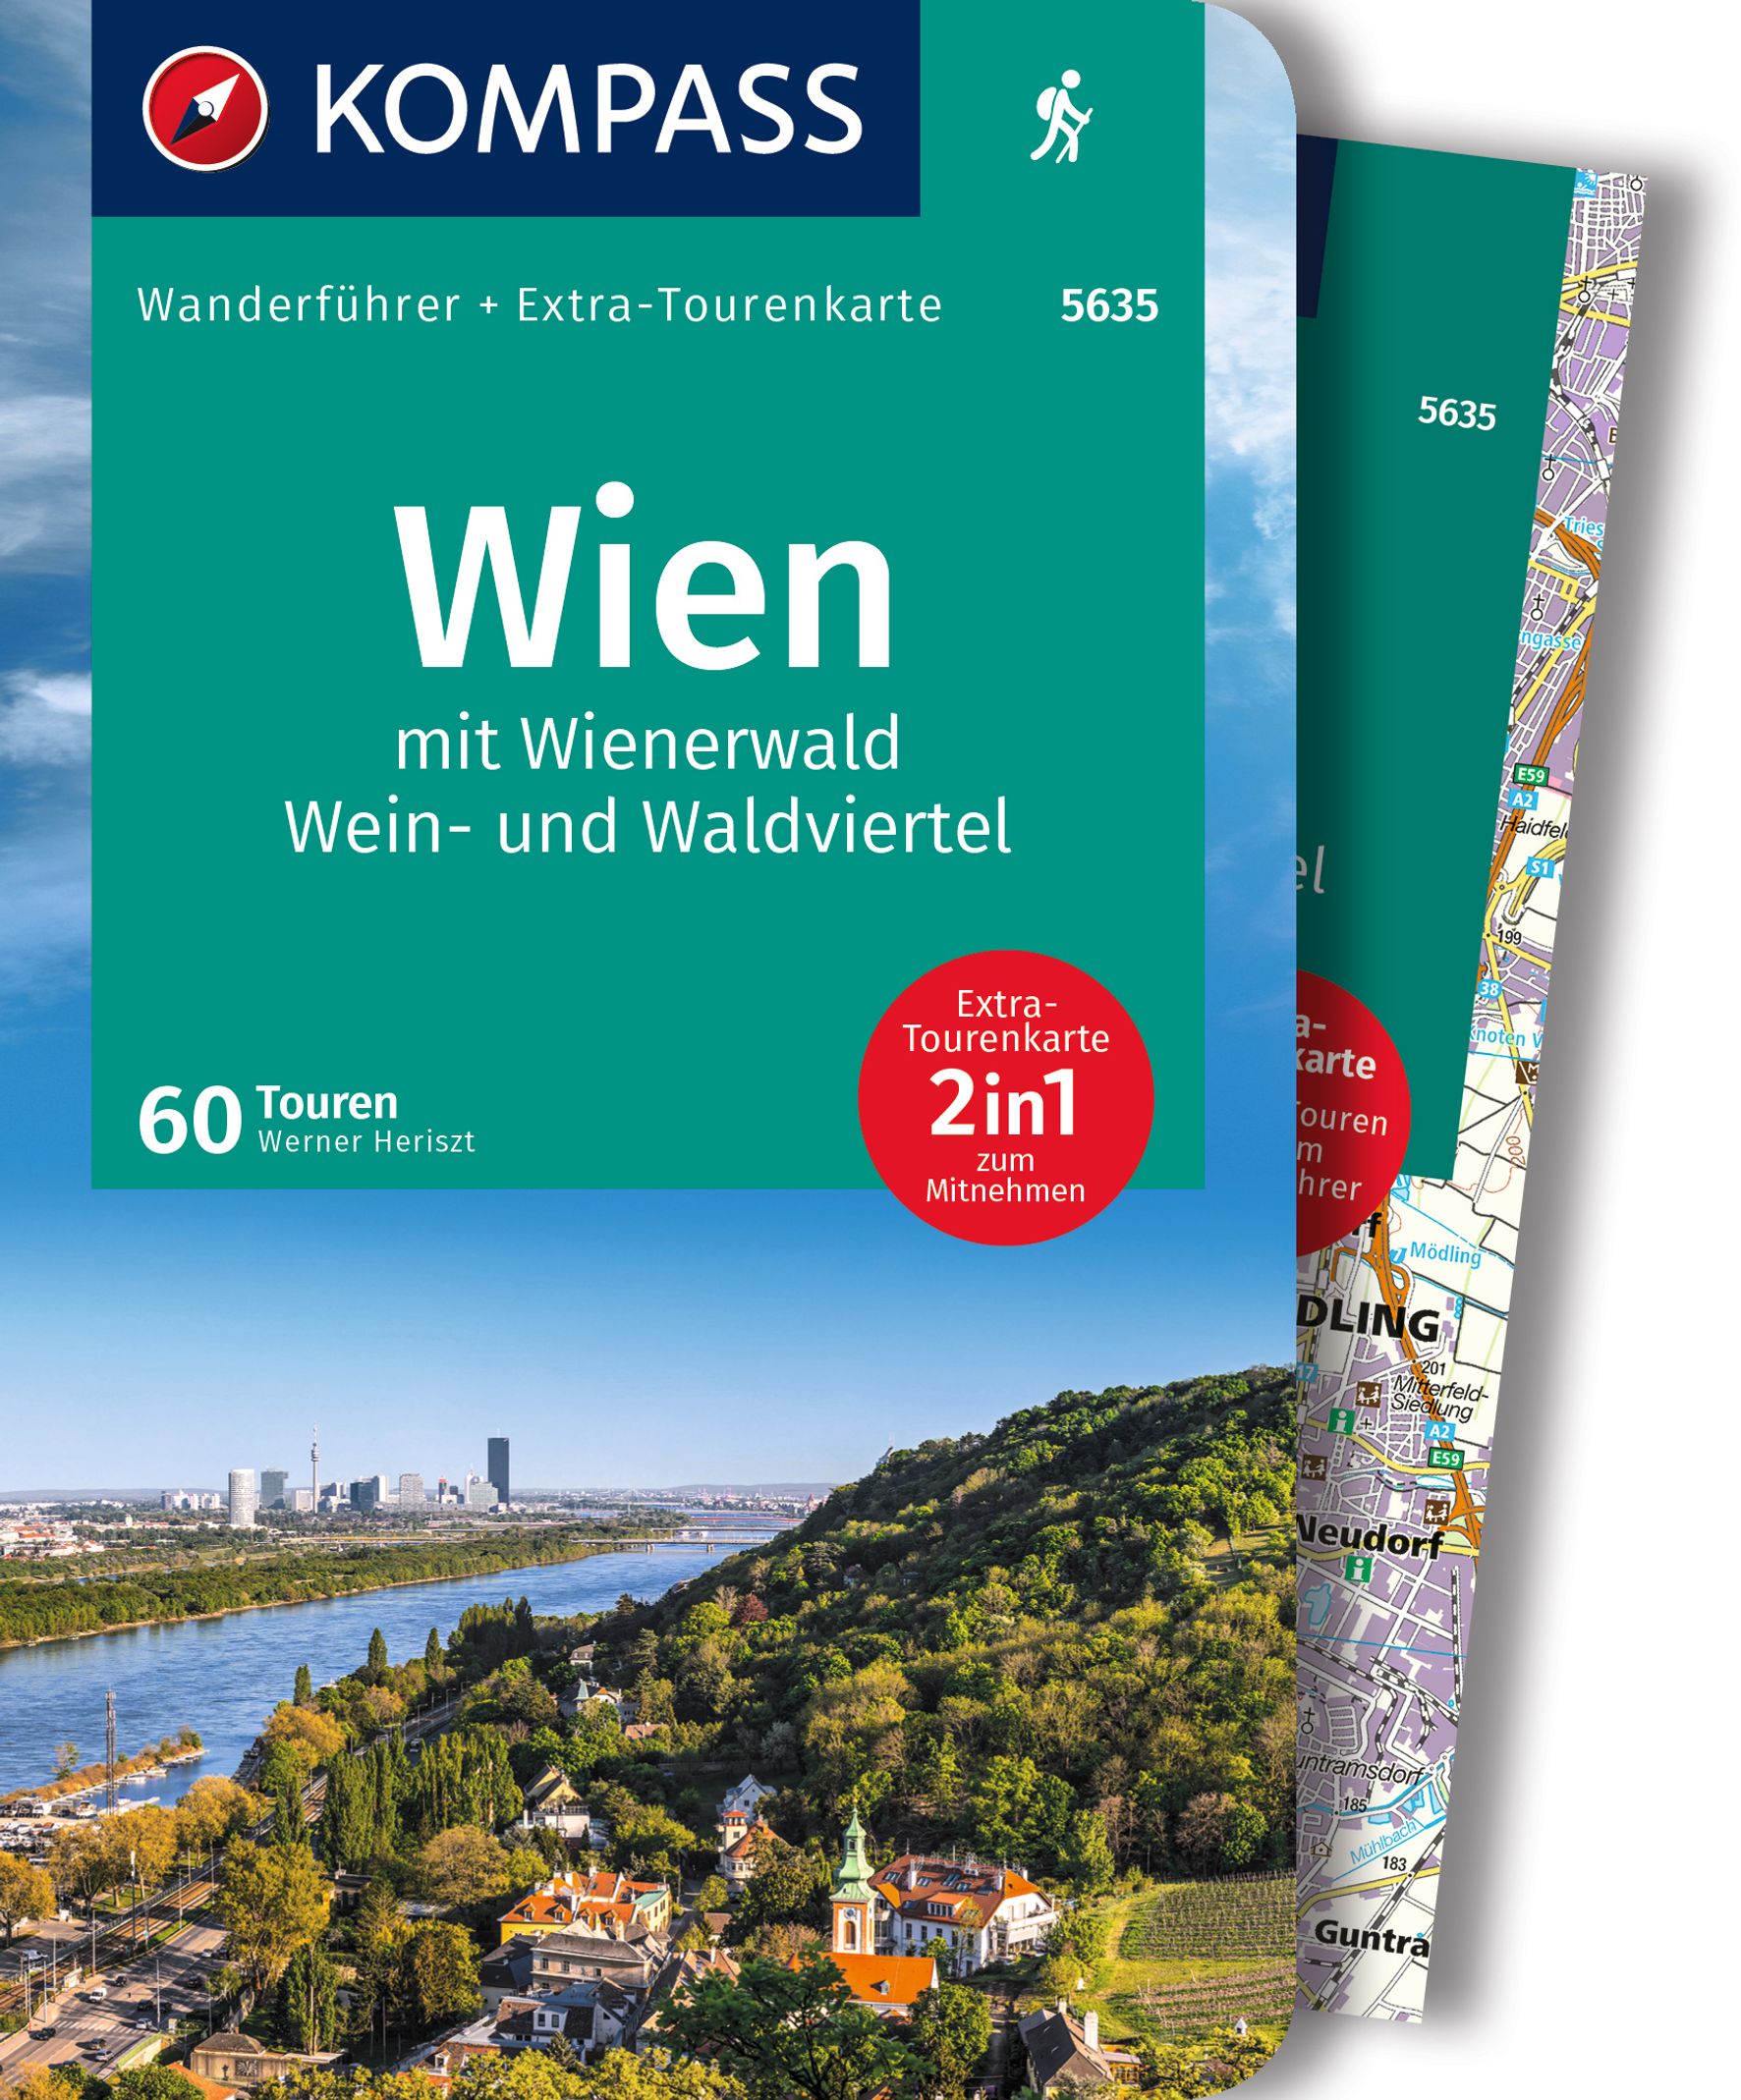 MAIRDUMONT Wien mit Wienerwald, Wein- und Waldviertel, 60 Touren mit Extra-Tourenkarte